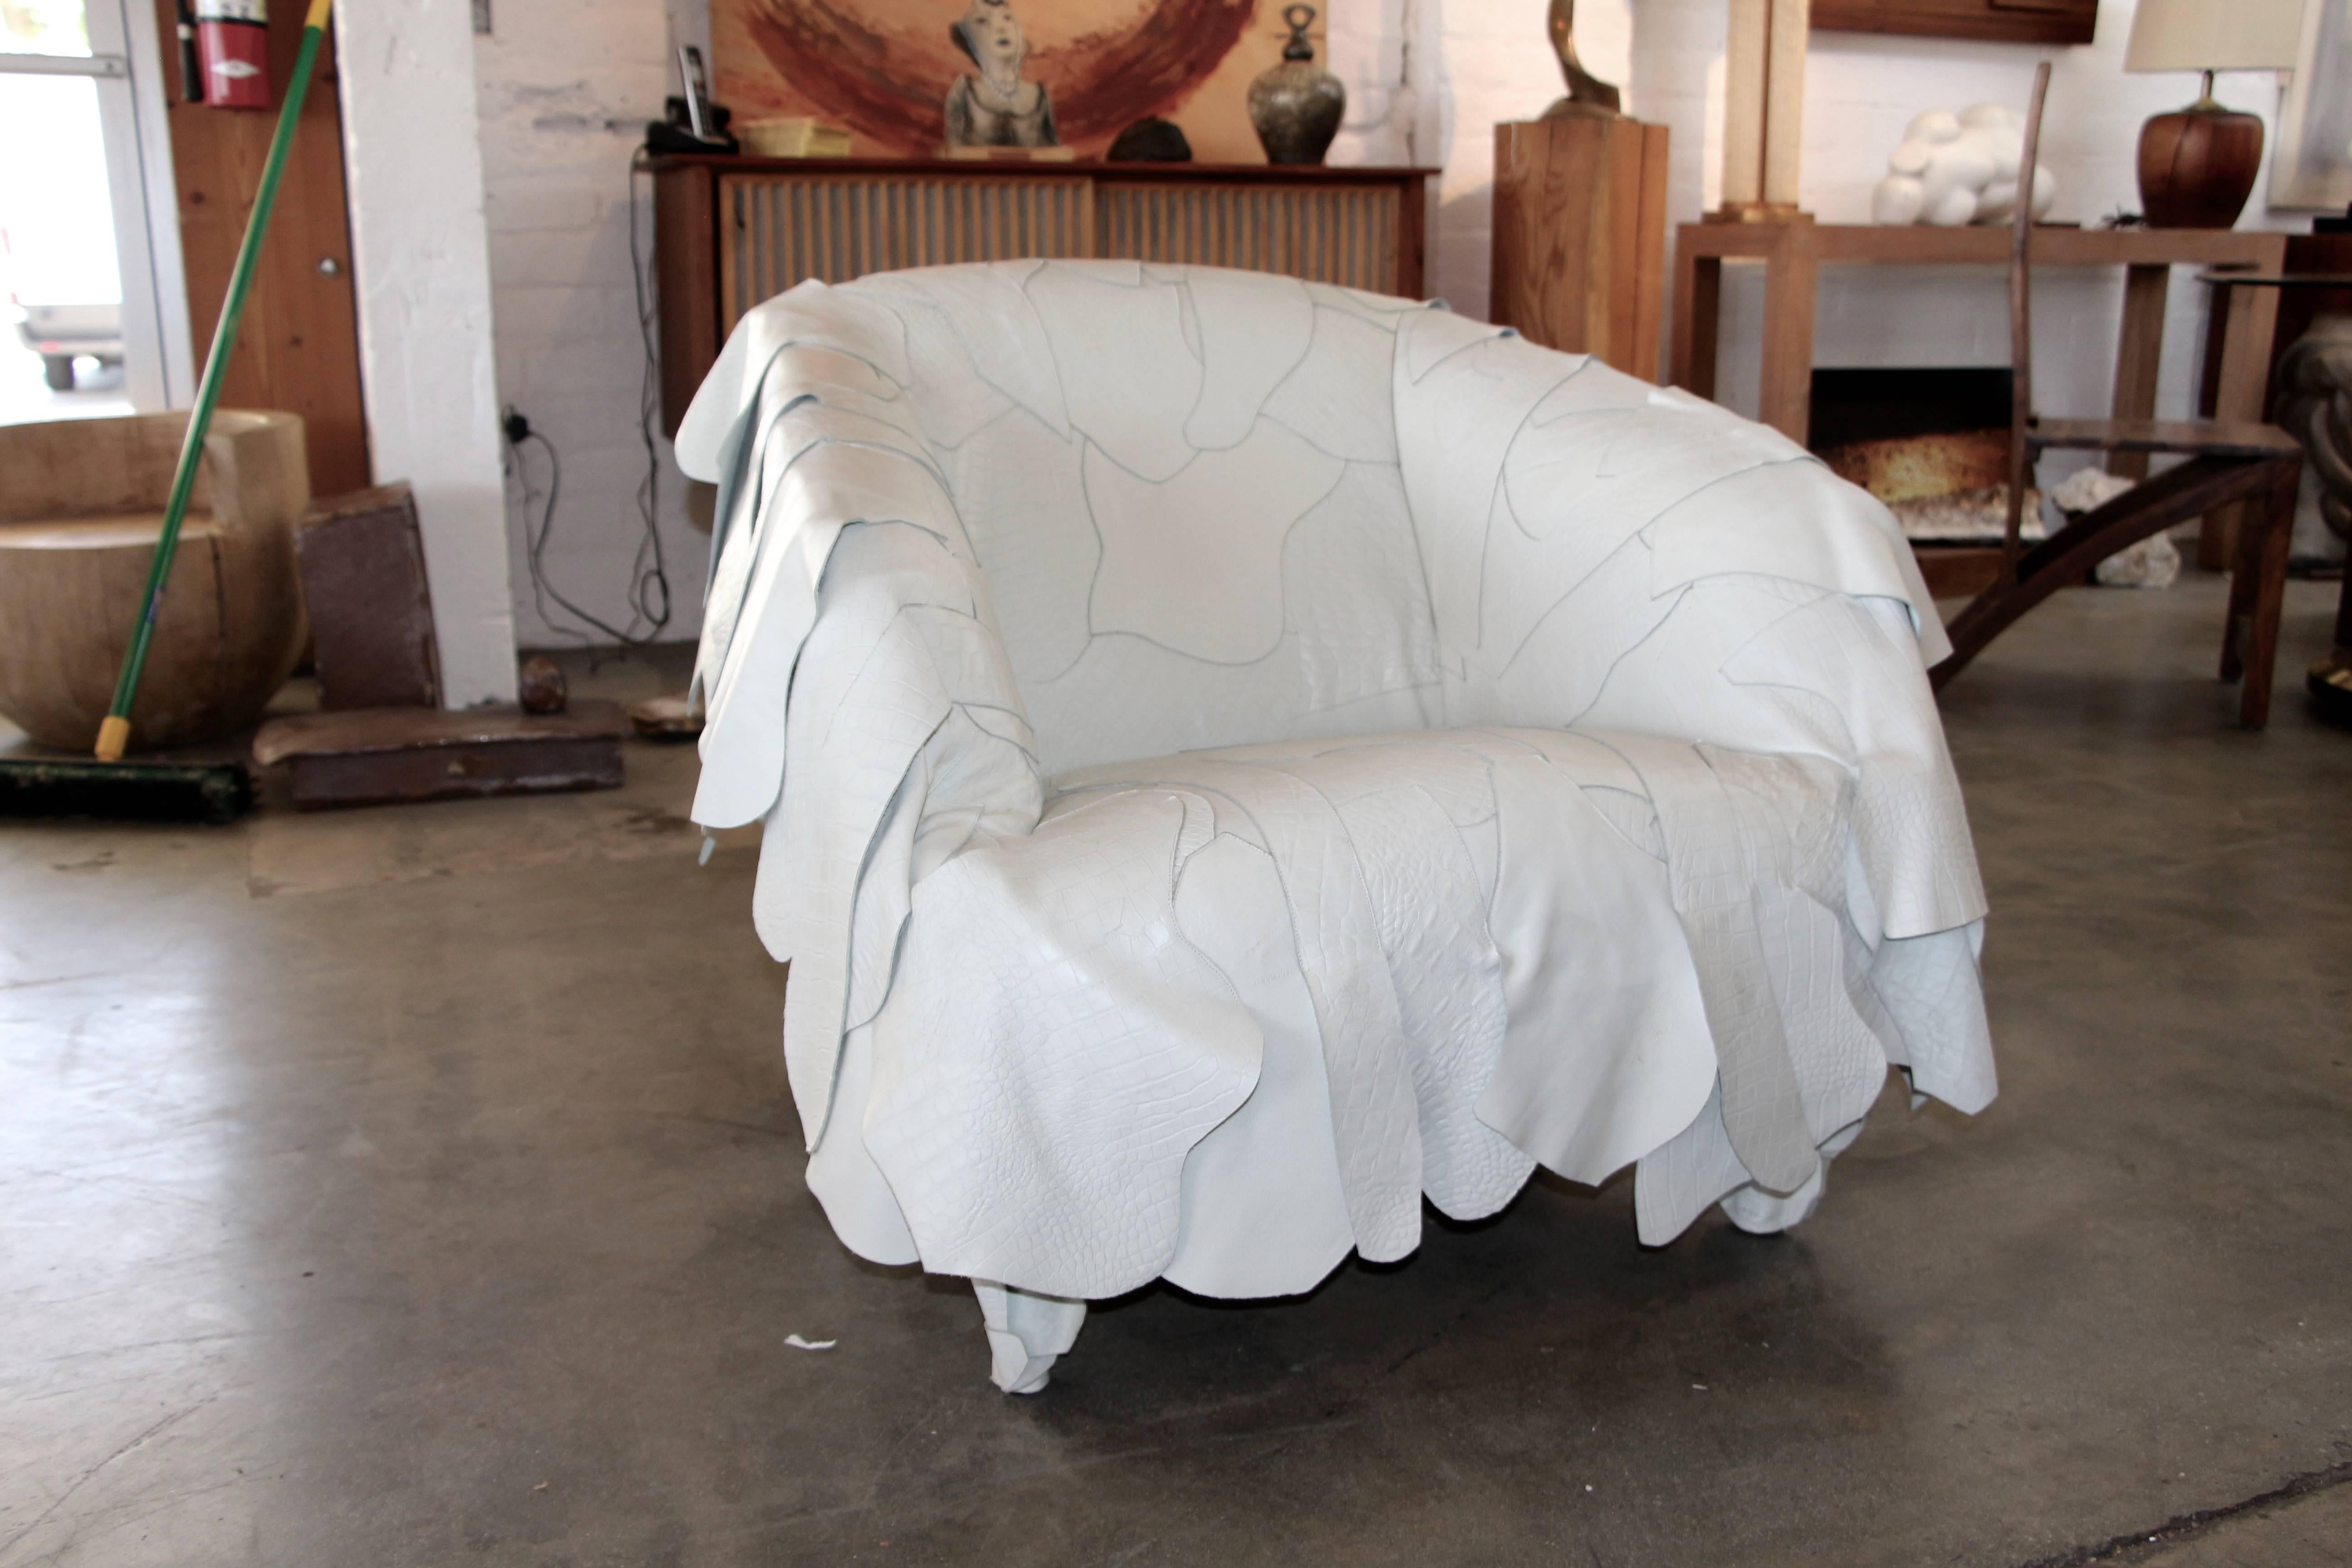 Une chaise en cuir plutôt inhabituelle et très désirable, conçue par Fernando et Humberto Campana. Cette chaise a été fabriquée en 2007 et fait partie du groupe Leather works, qui comprenait une chaise d'appoint. Il a été fabriqué par Edra.

Les